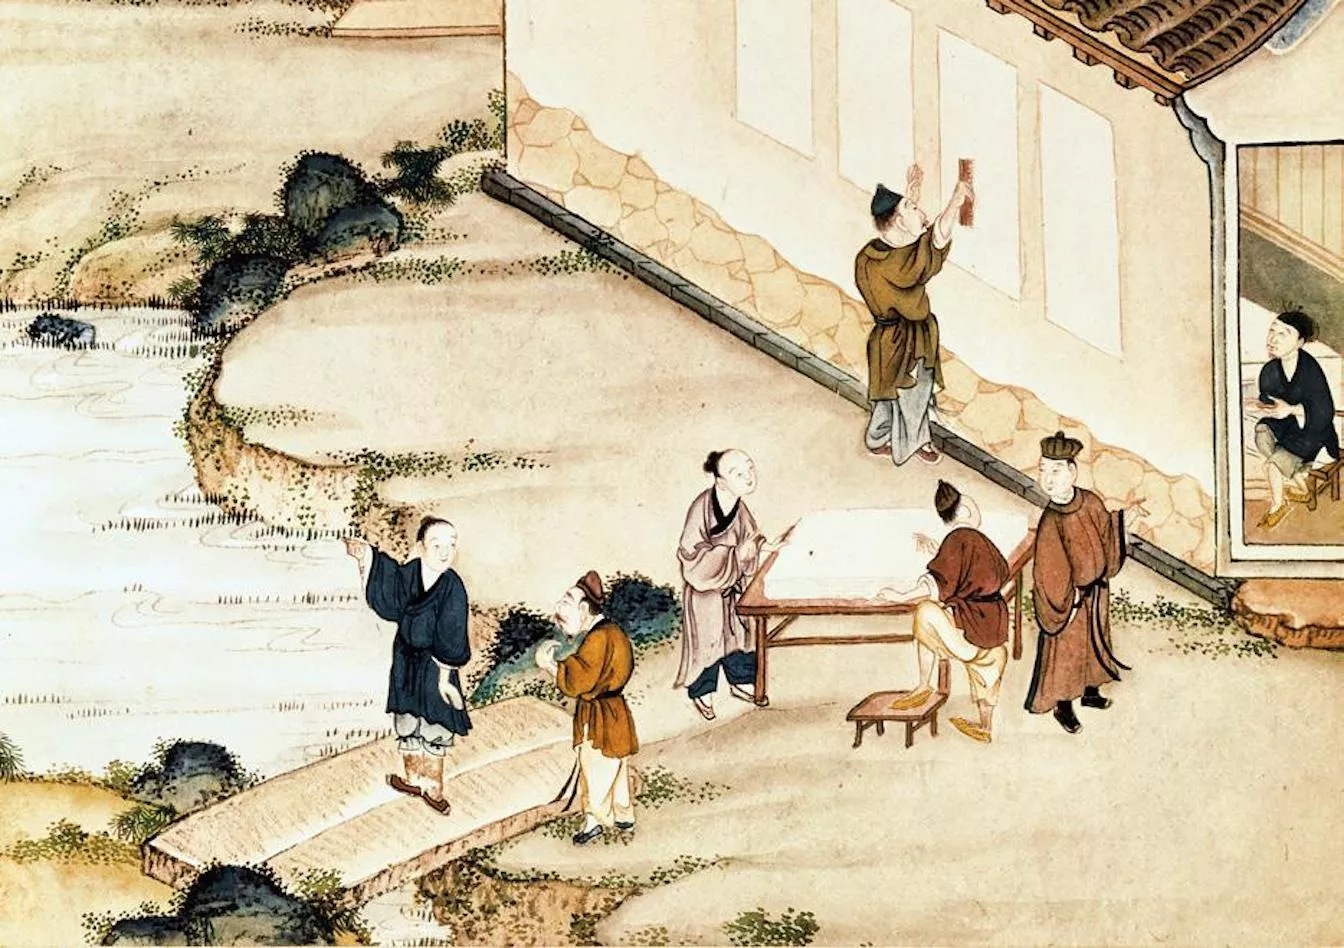 L’origen del paper s’atribueix a Cai Lun, que barrejava fibres de seda, roba vella, tires de bambú i escorça de morera